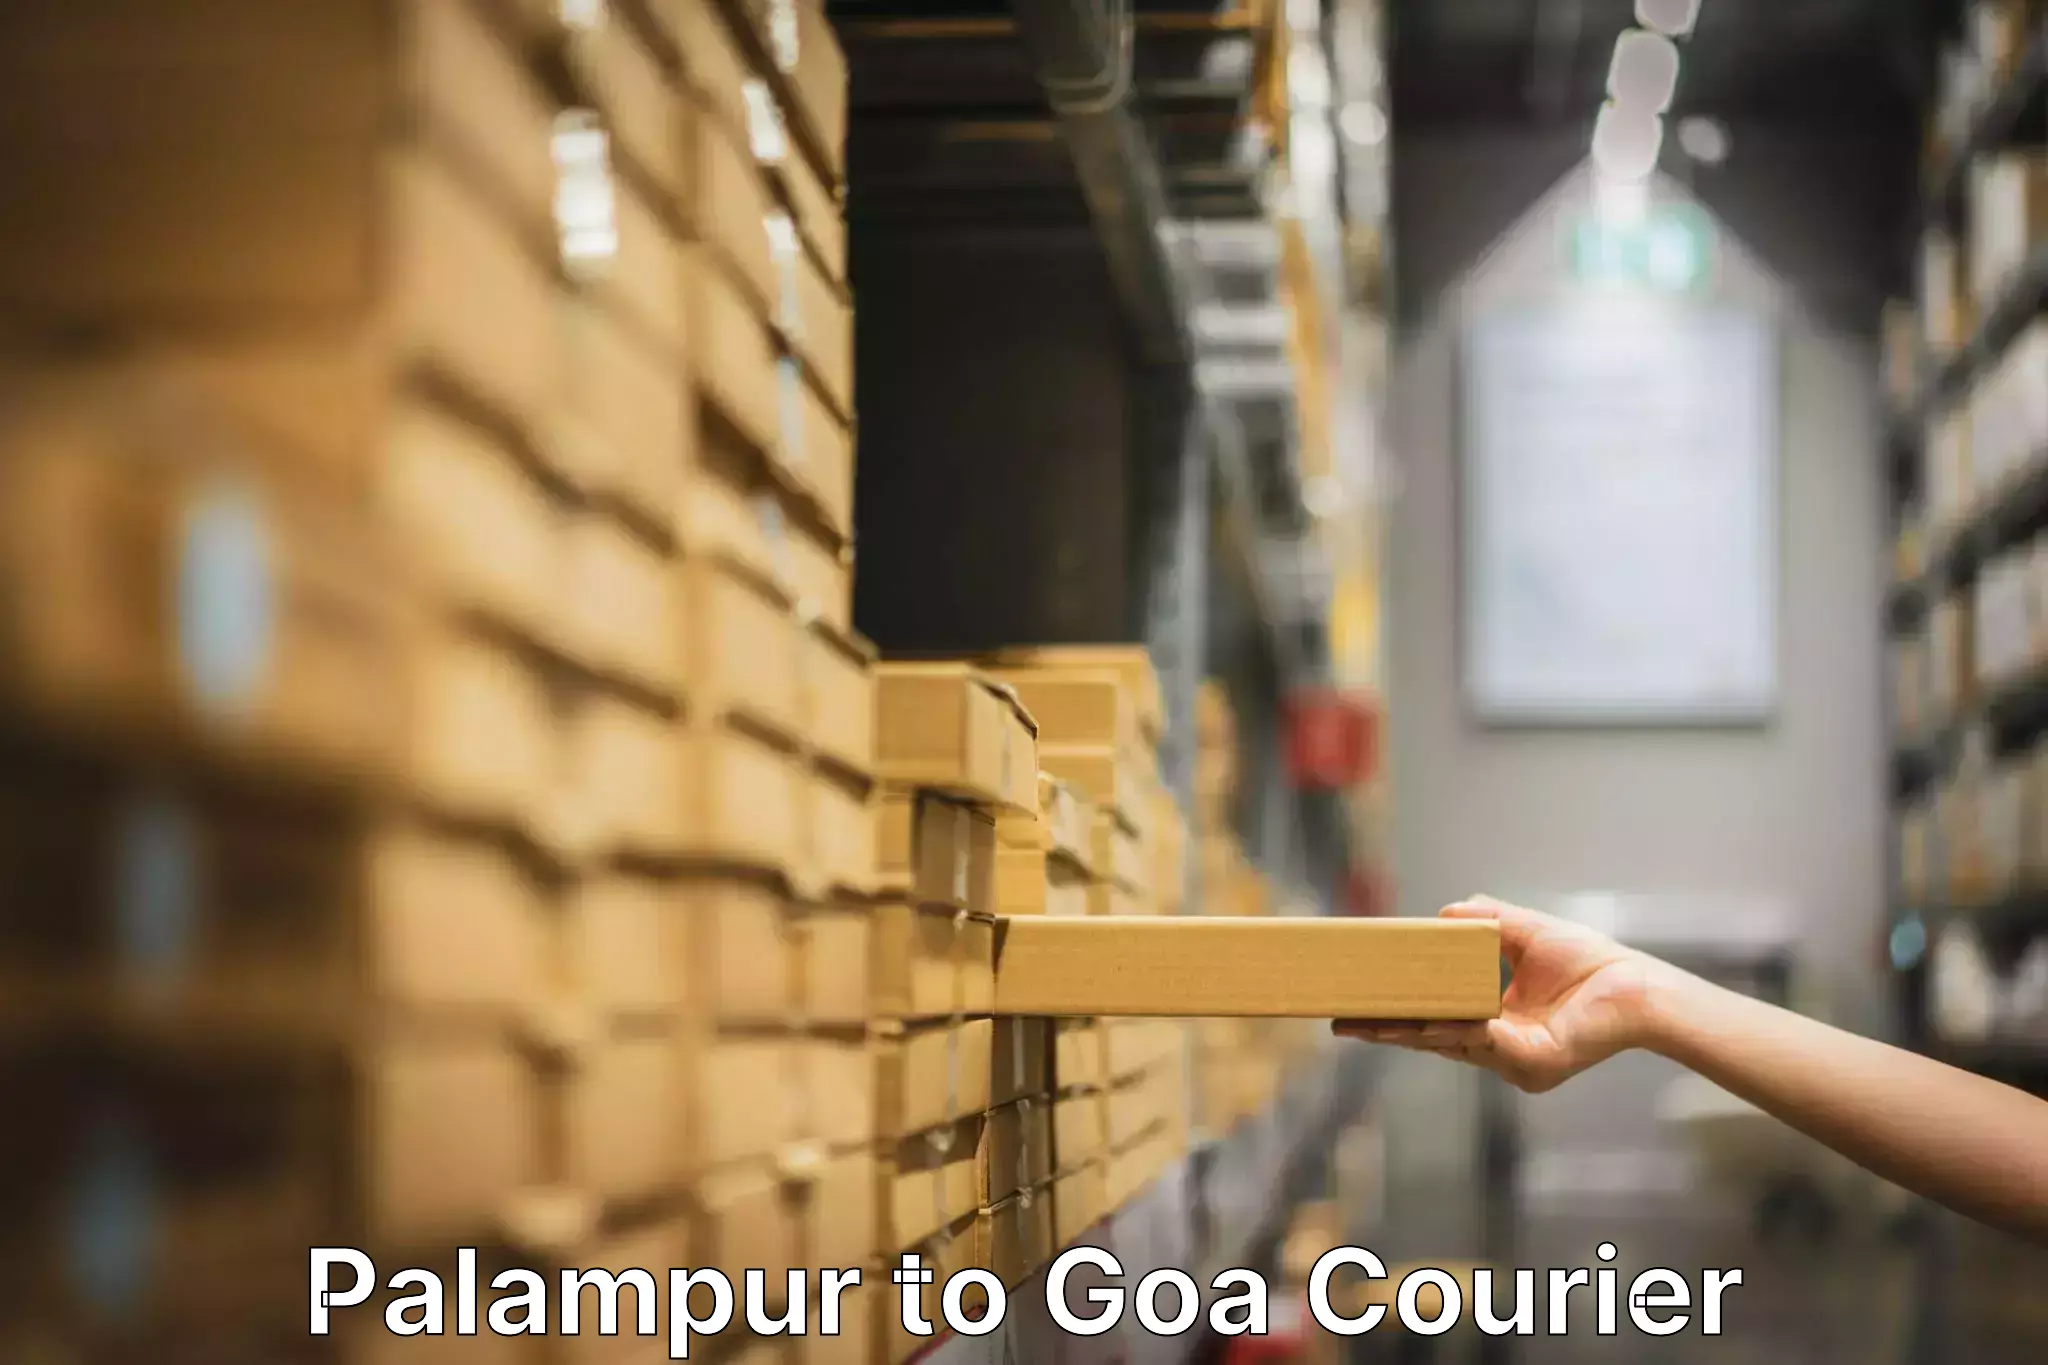 Furniture transport service Palampur to Panjim